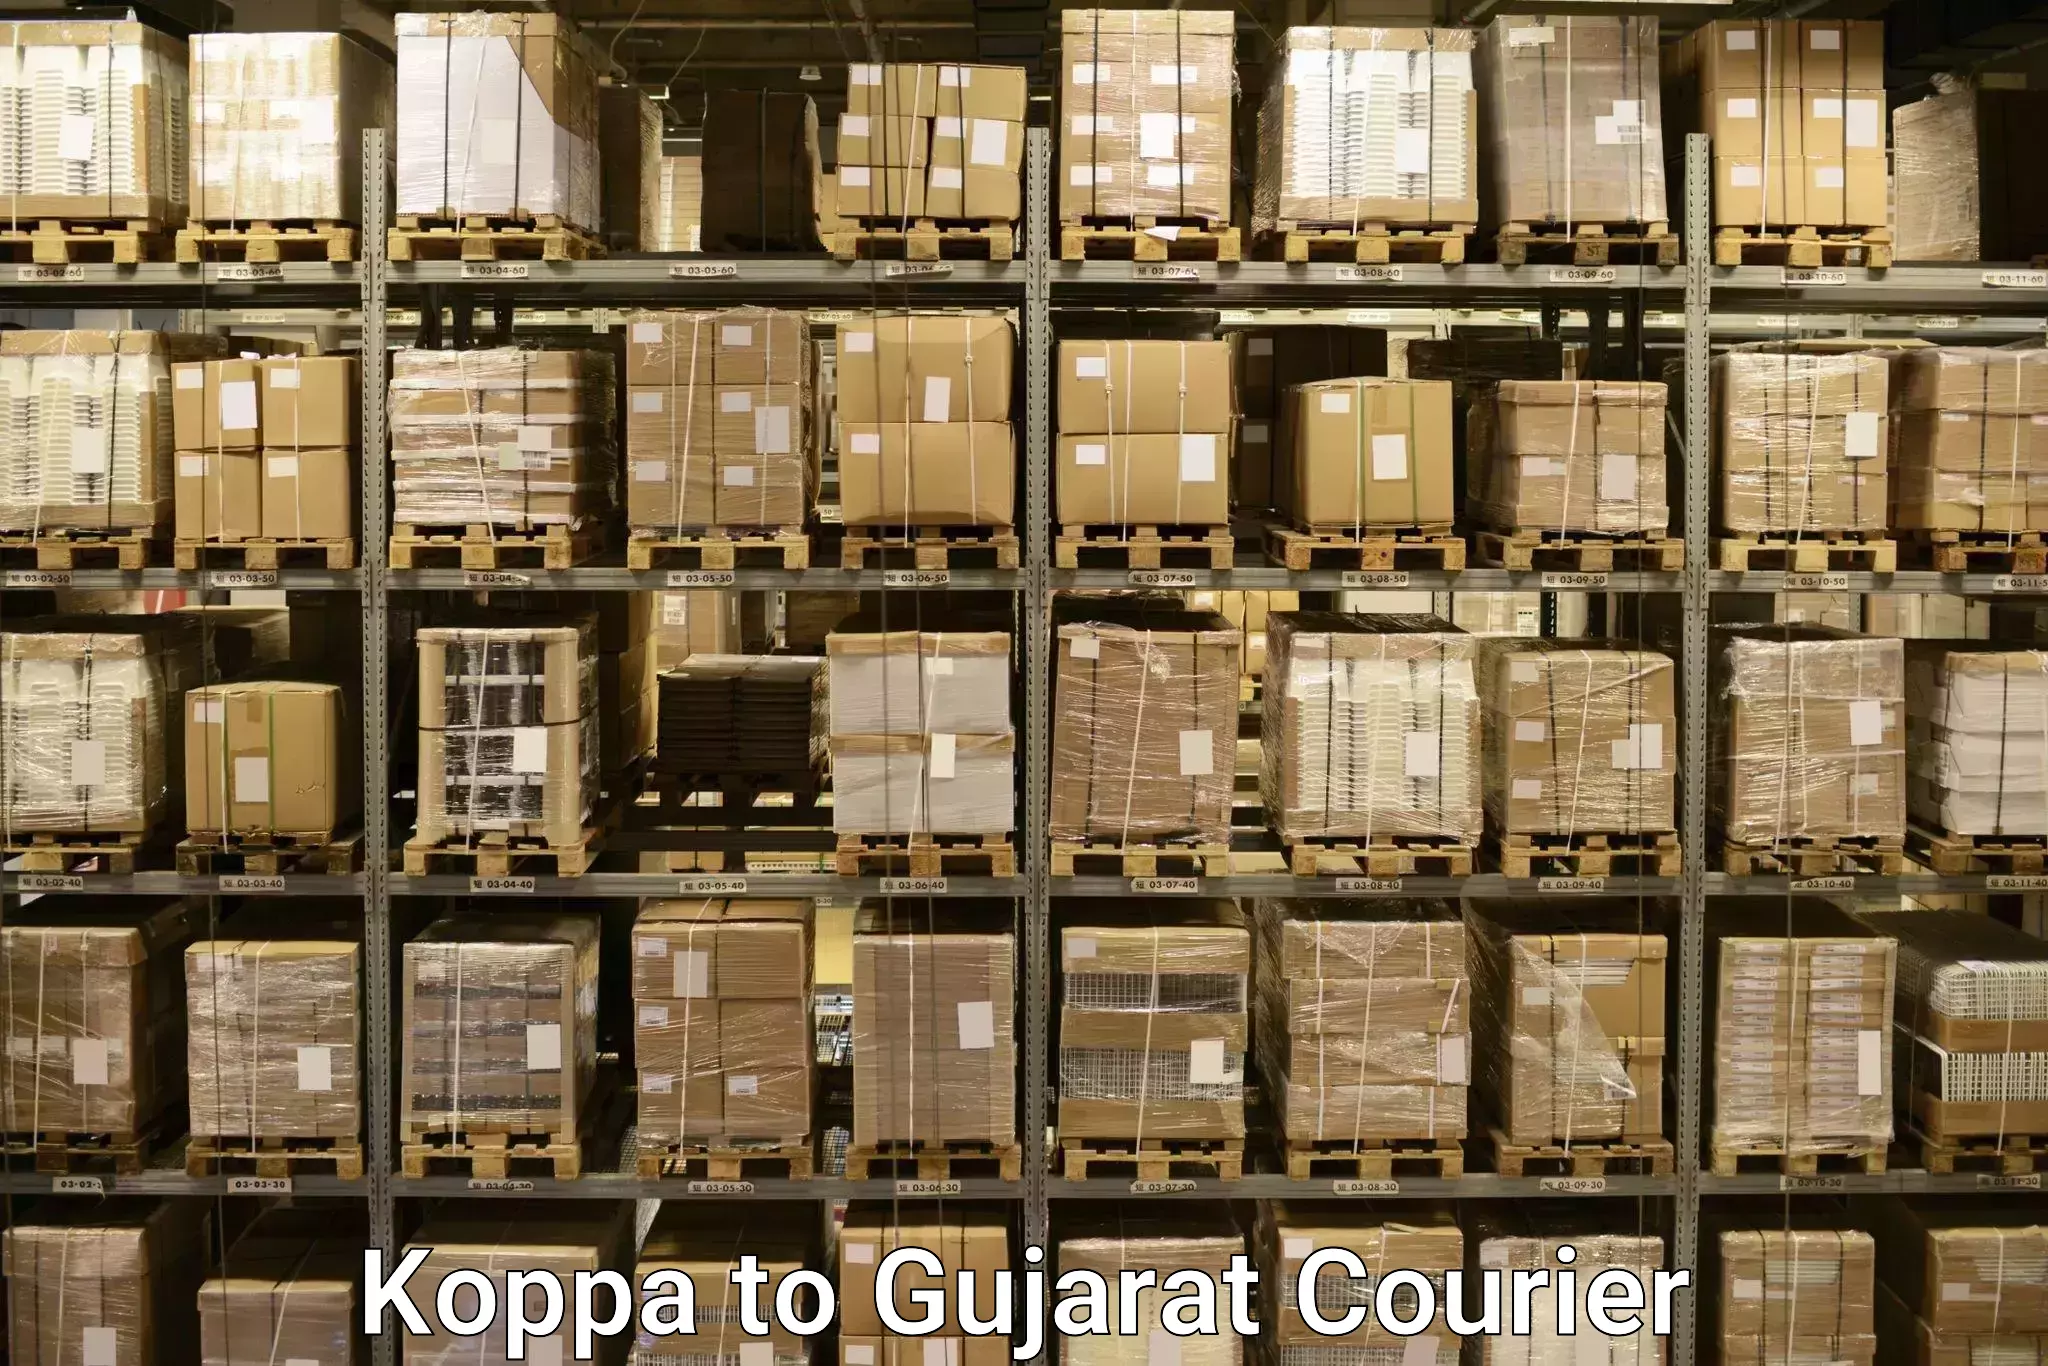 Baggage transport quote Koppa to Karjan